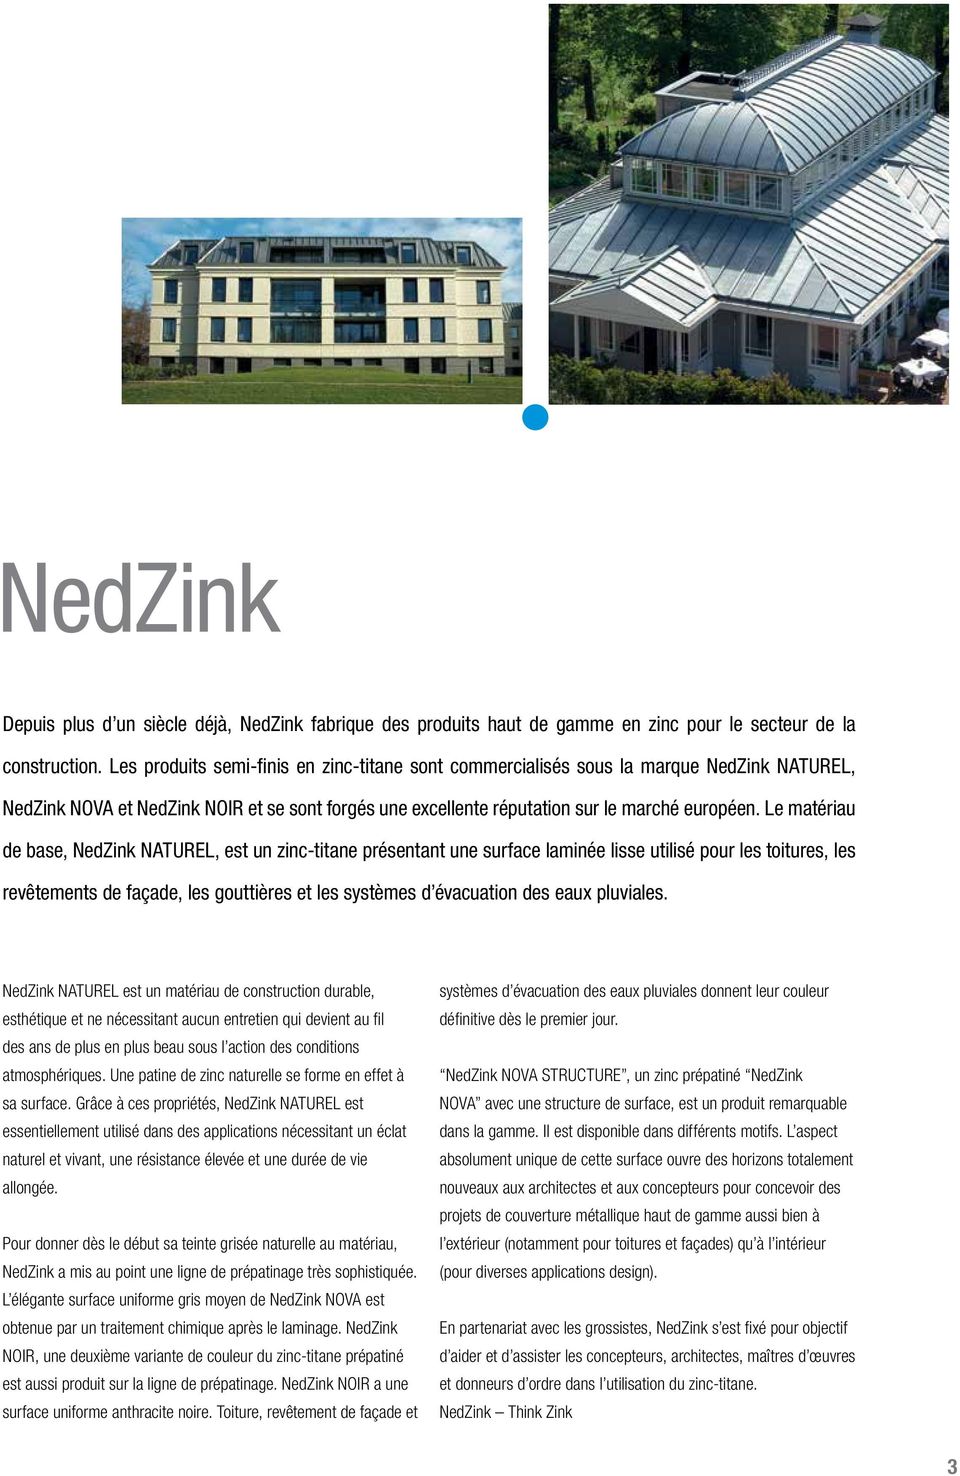 Le matériau de base, NedZink NATUREL, est un zinc-titane présentant une surface laminée lisse utilisé pour les toitures, les revêtements de façade, les gouttières et les systèmes d évacuation des